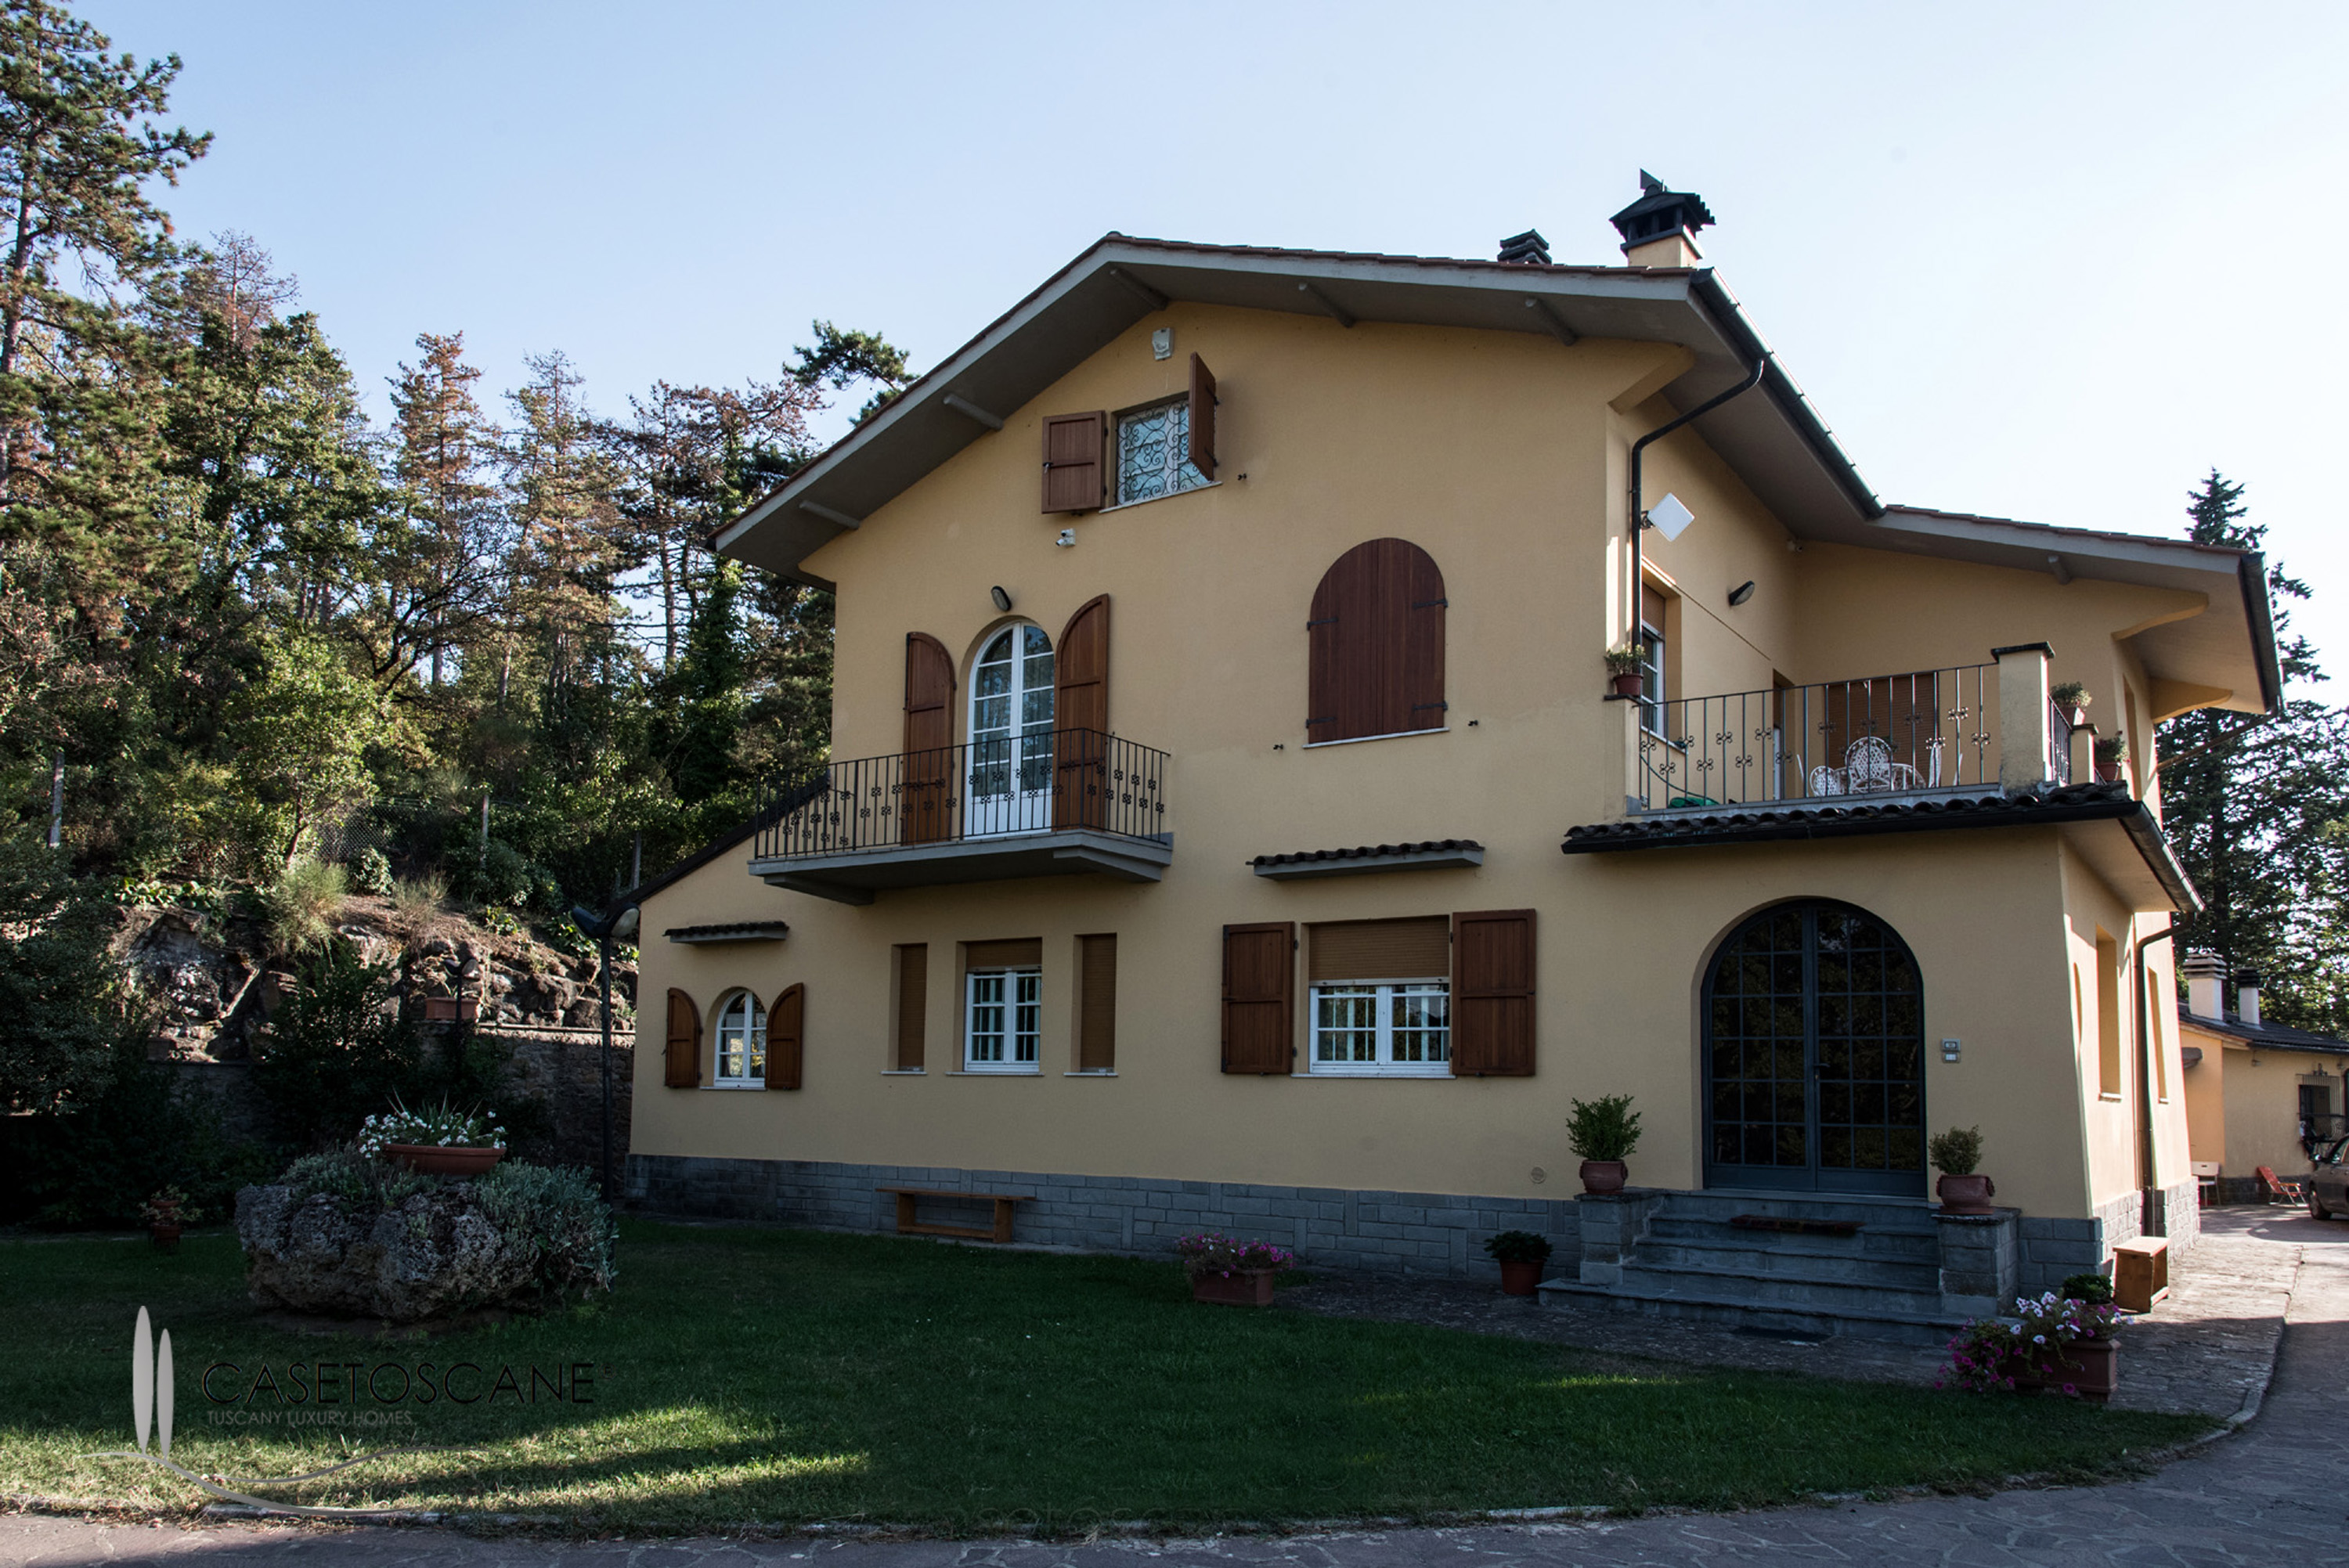 Villa ristrutturata con parco nelle colline a due passi da Arezzo.